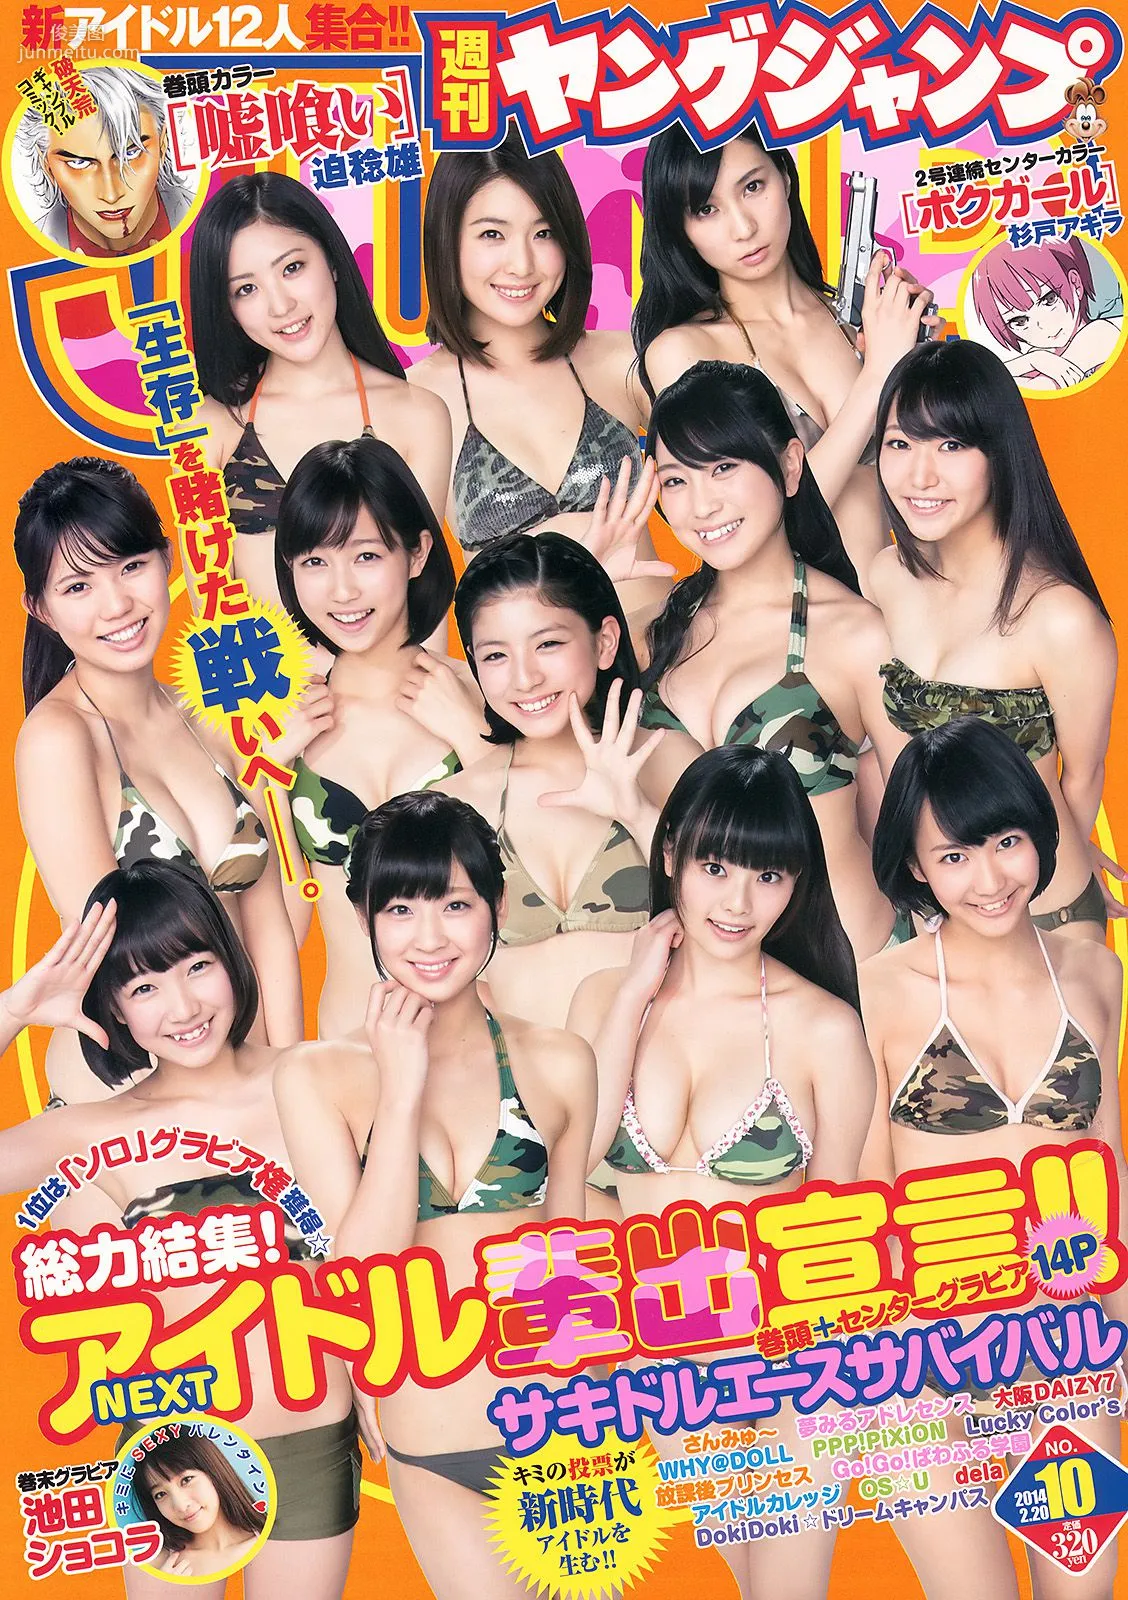 サキドルエースSURVIVAL SEASON3 池田ショコラ [Weekly Young Jump] 2014年No.10 写真杂志1